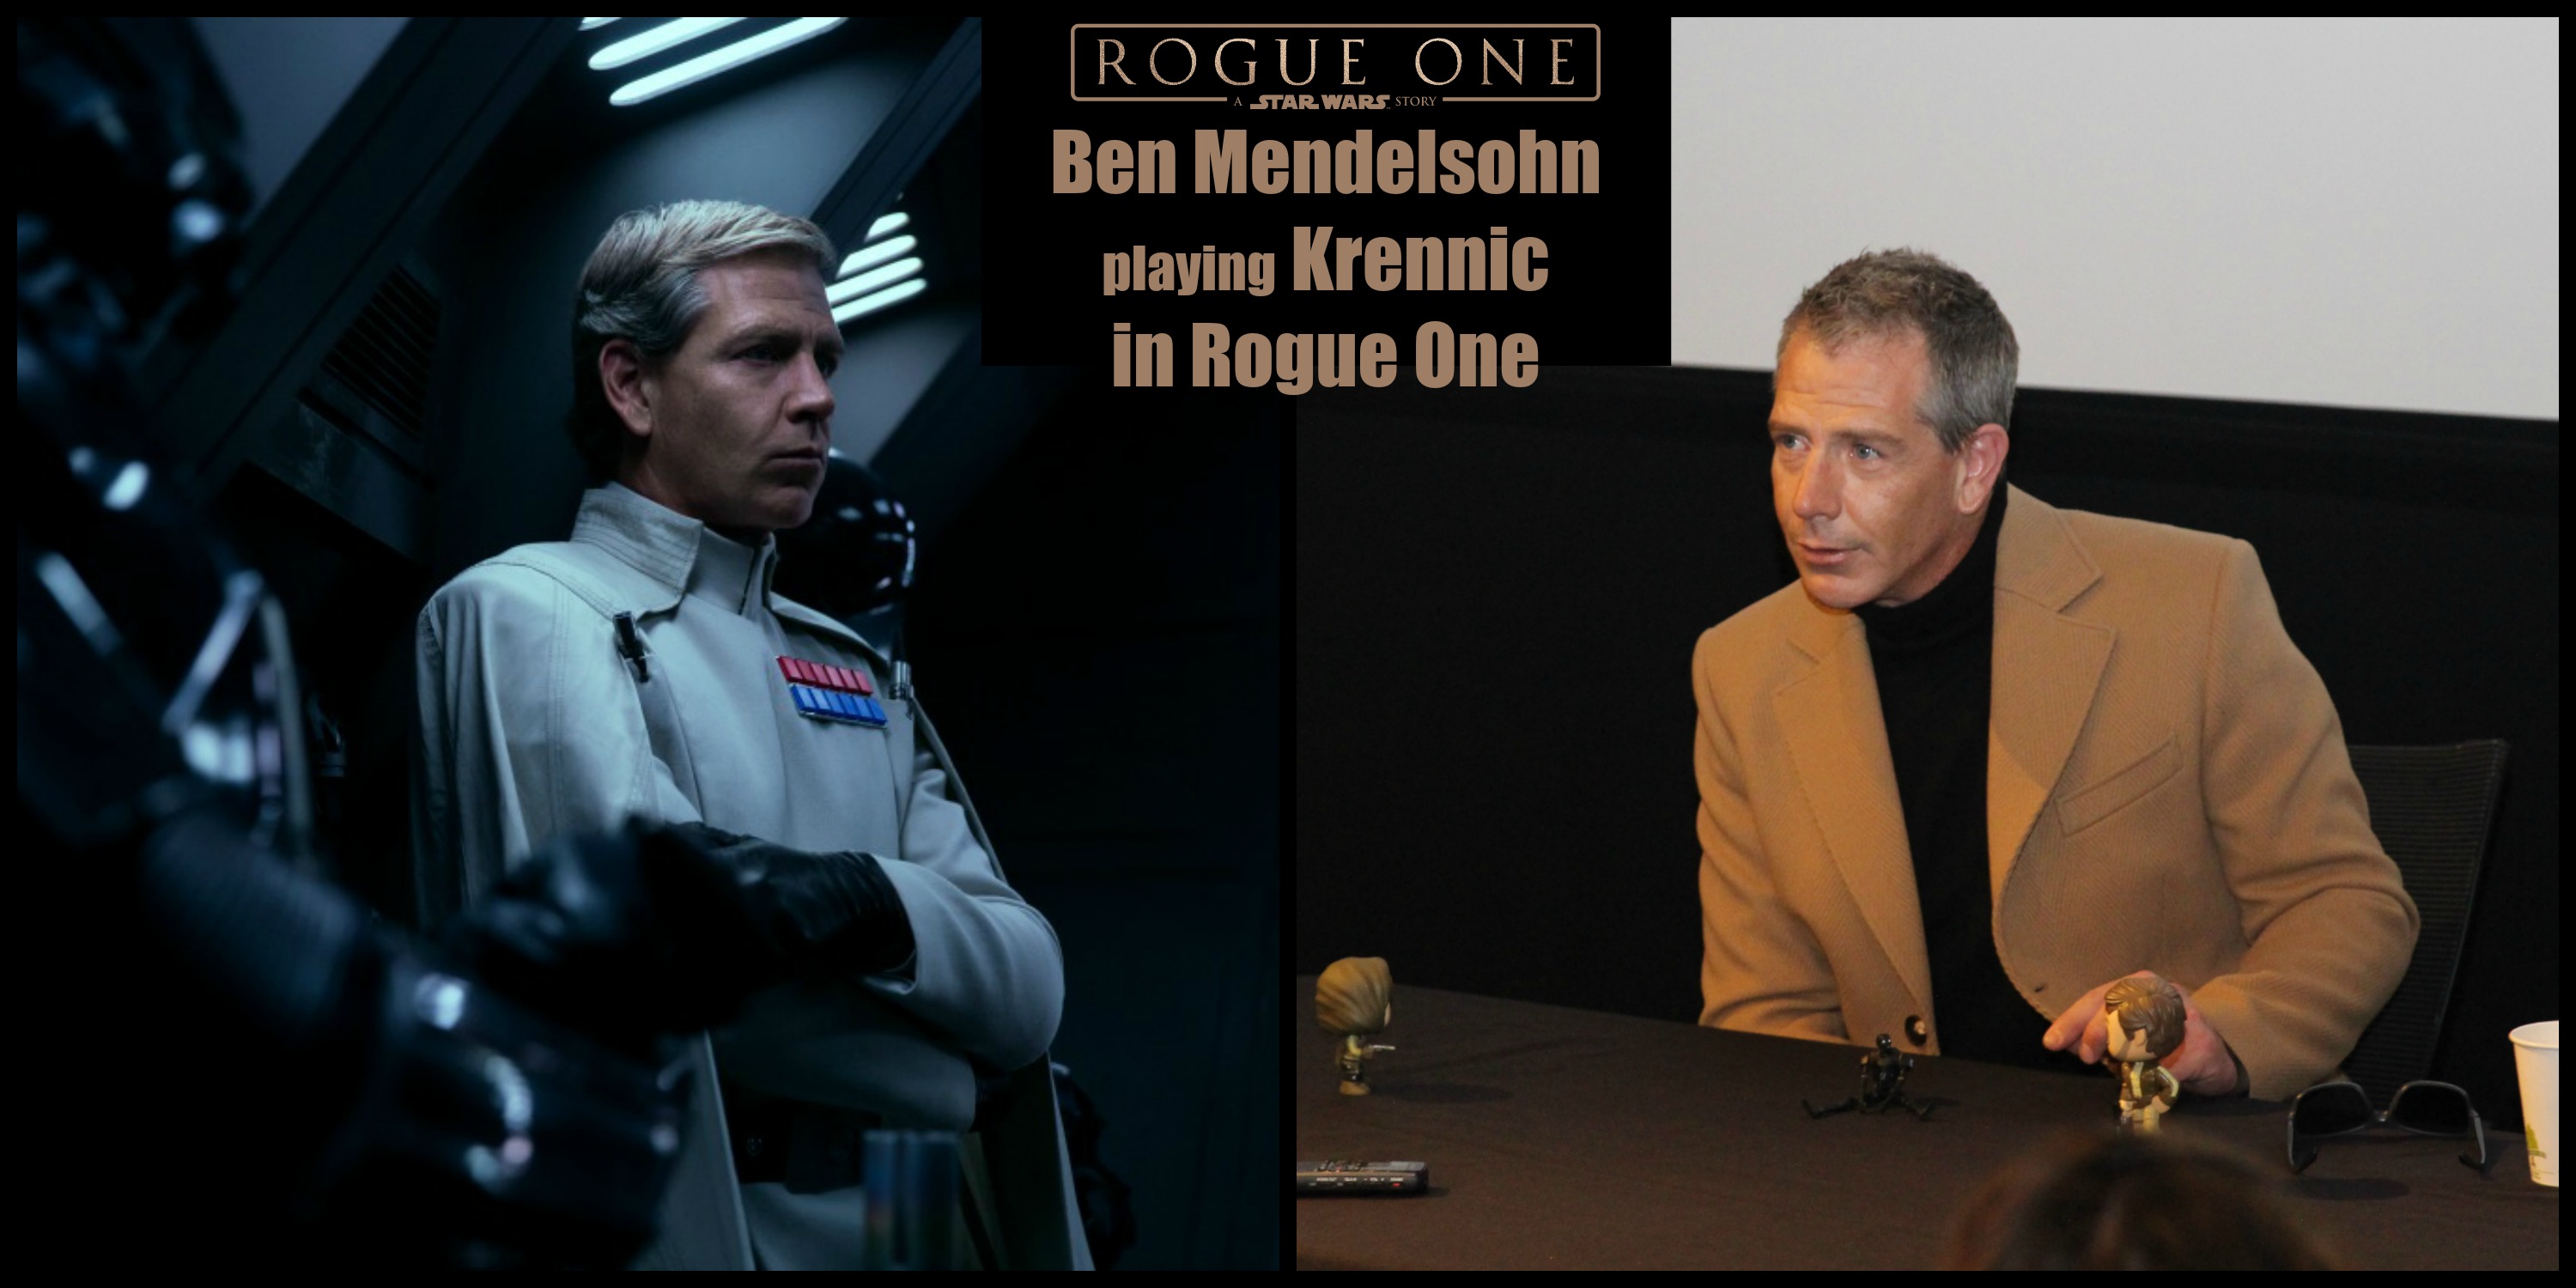 Ben Mendelsohn playing Krennic in Rogue One